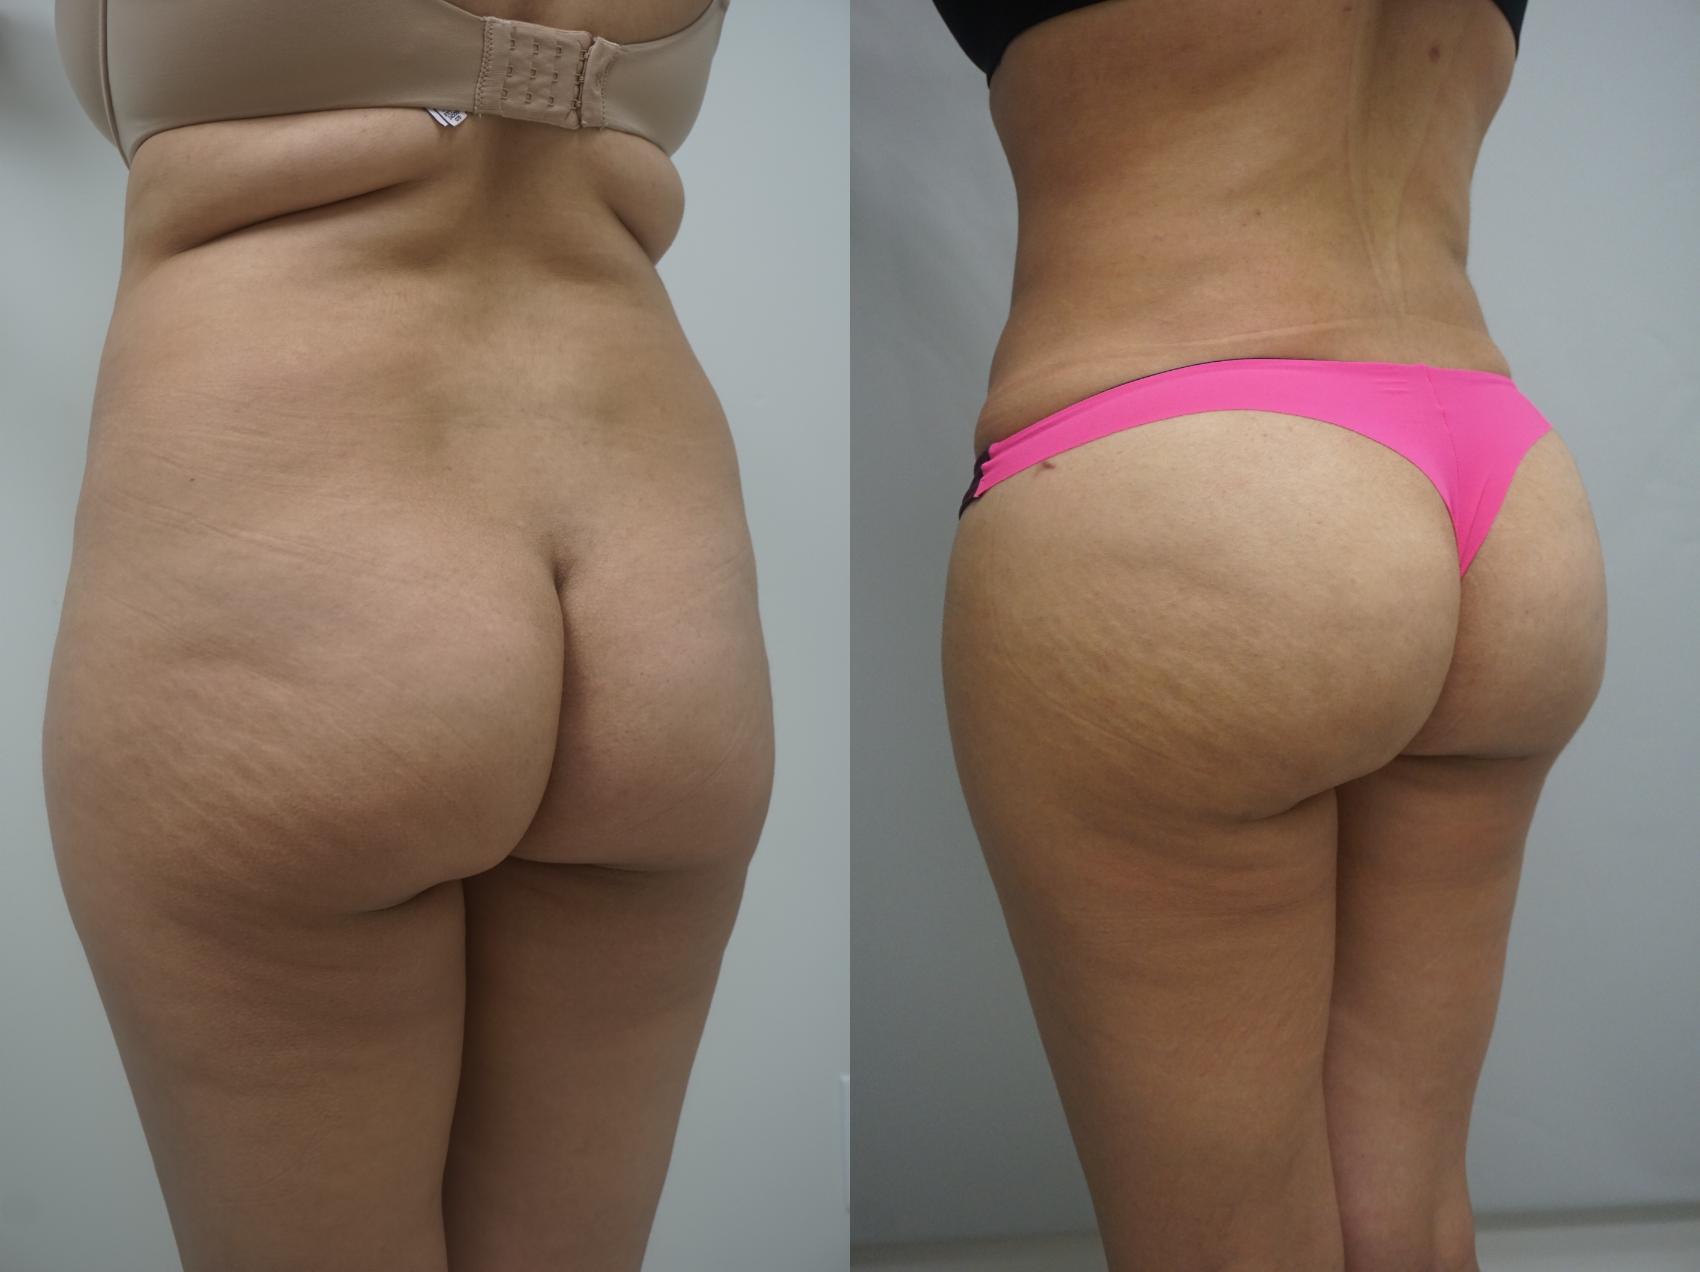 Brazil Butt Lift Workout Calendar & Before and After